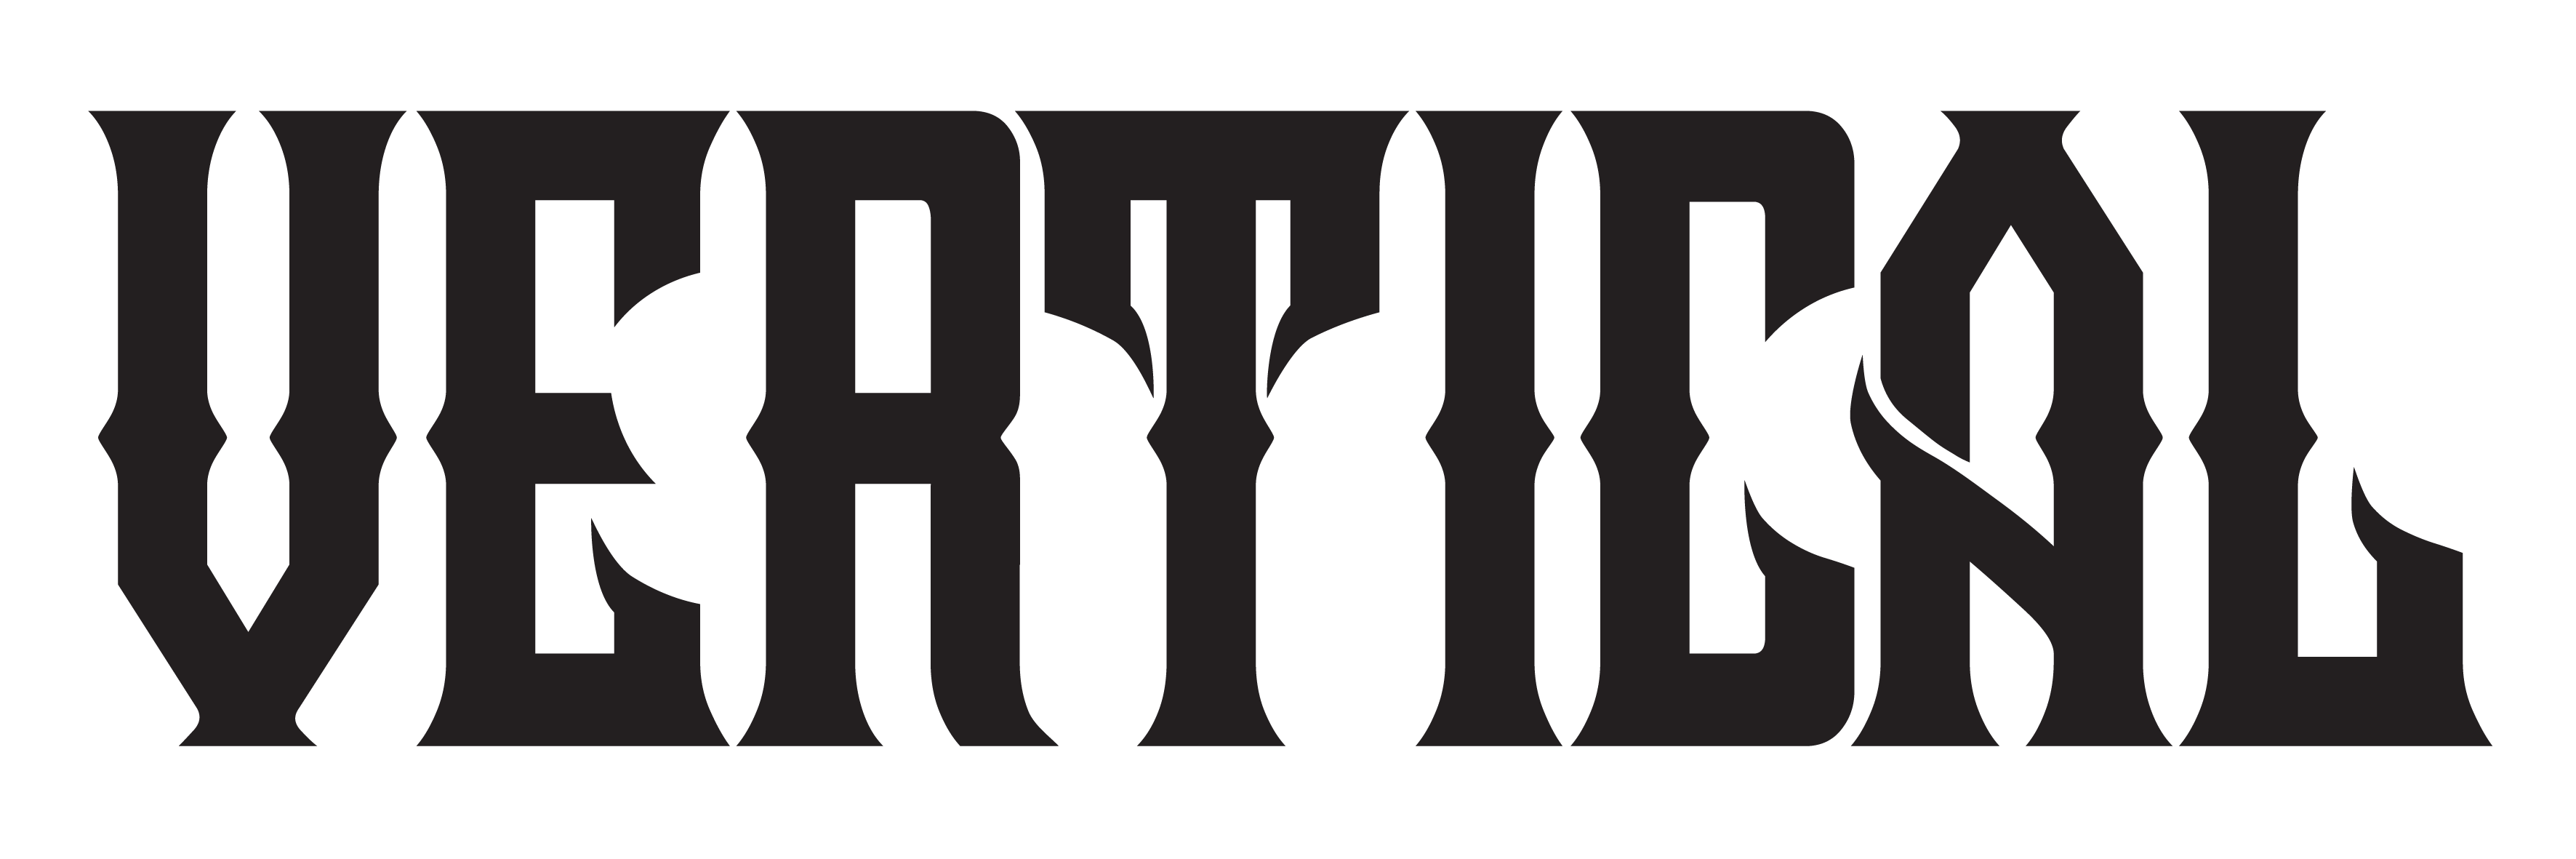 Vertical logo final 1